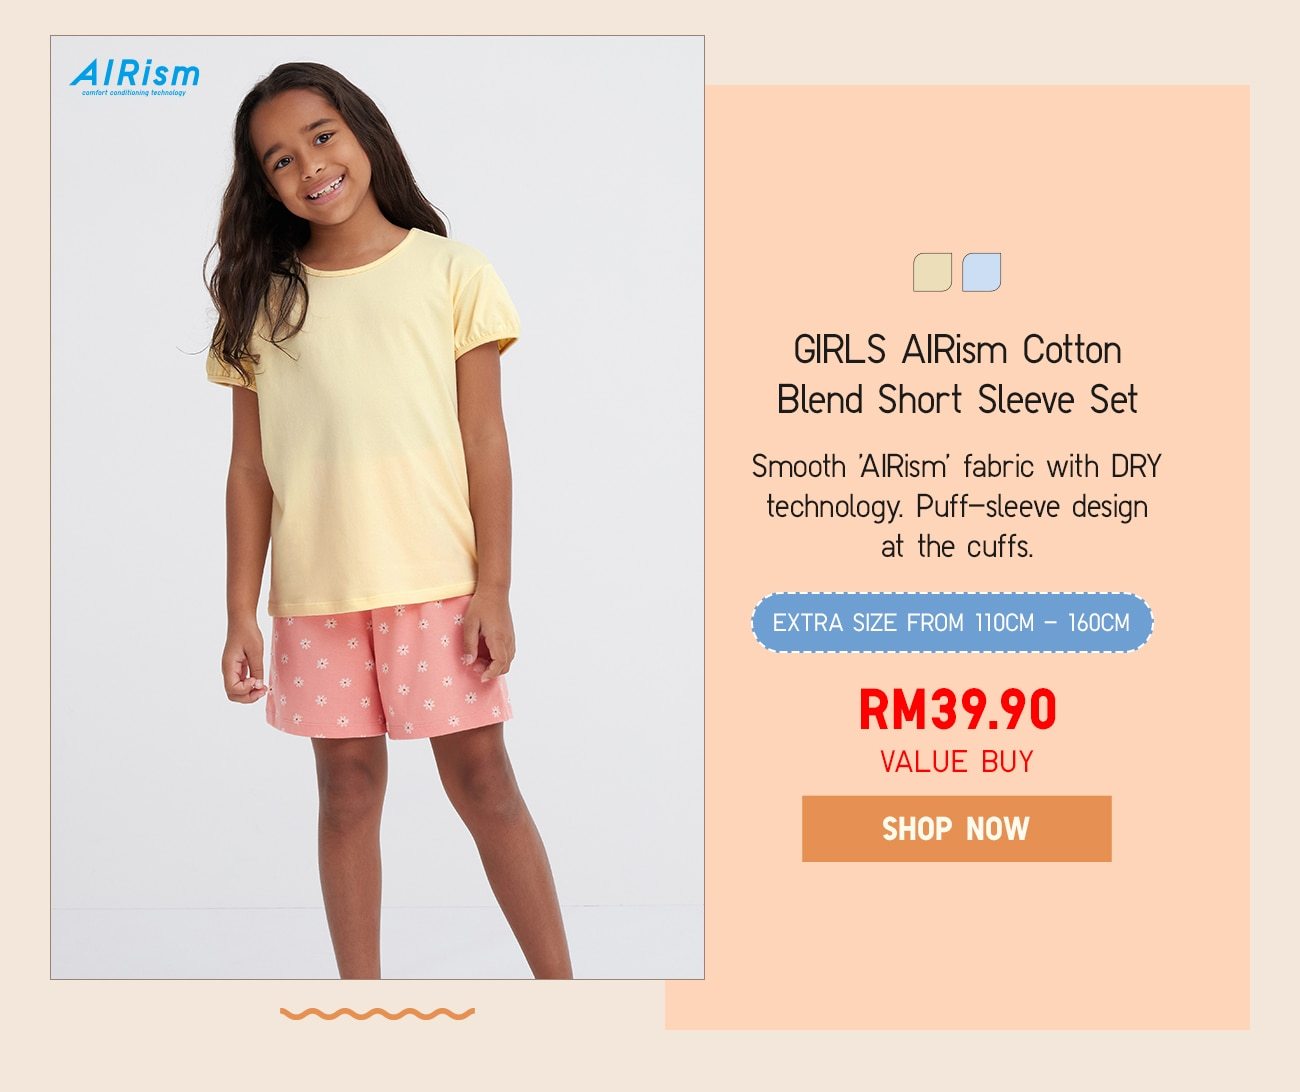 GIRLS AIRism Cotton Blend Short Sleeve Set